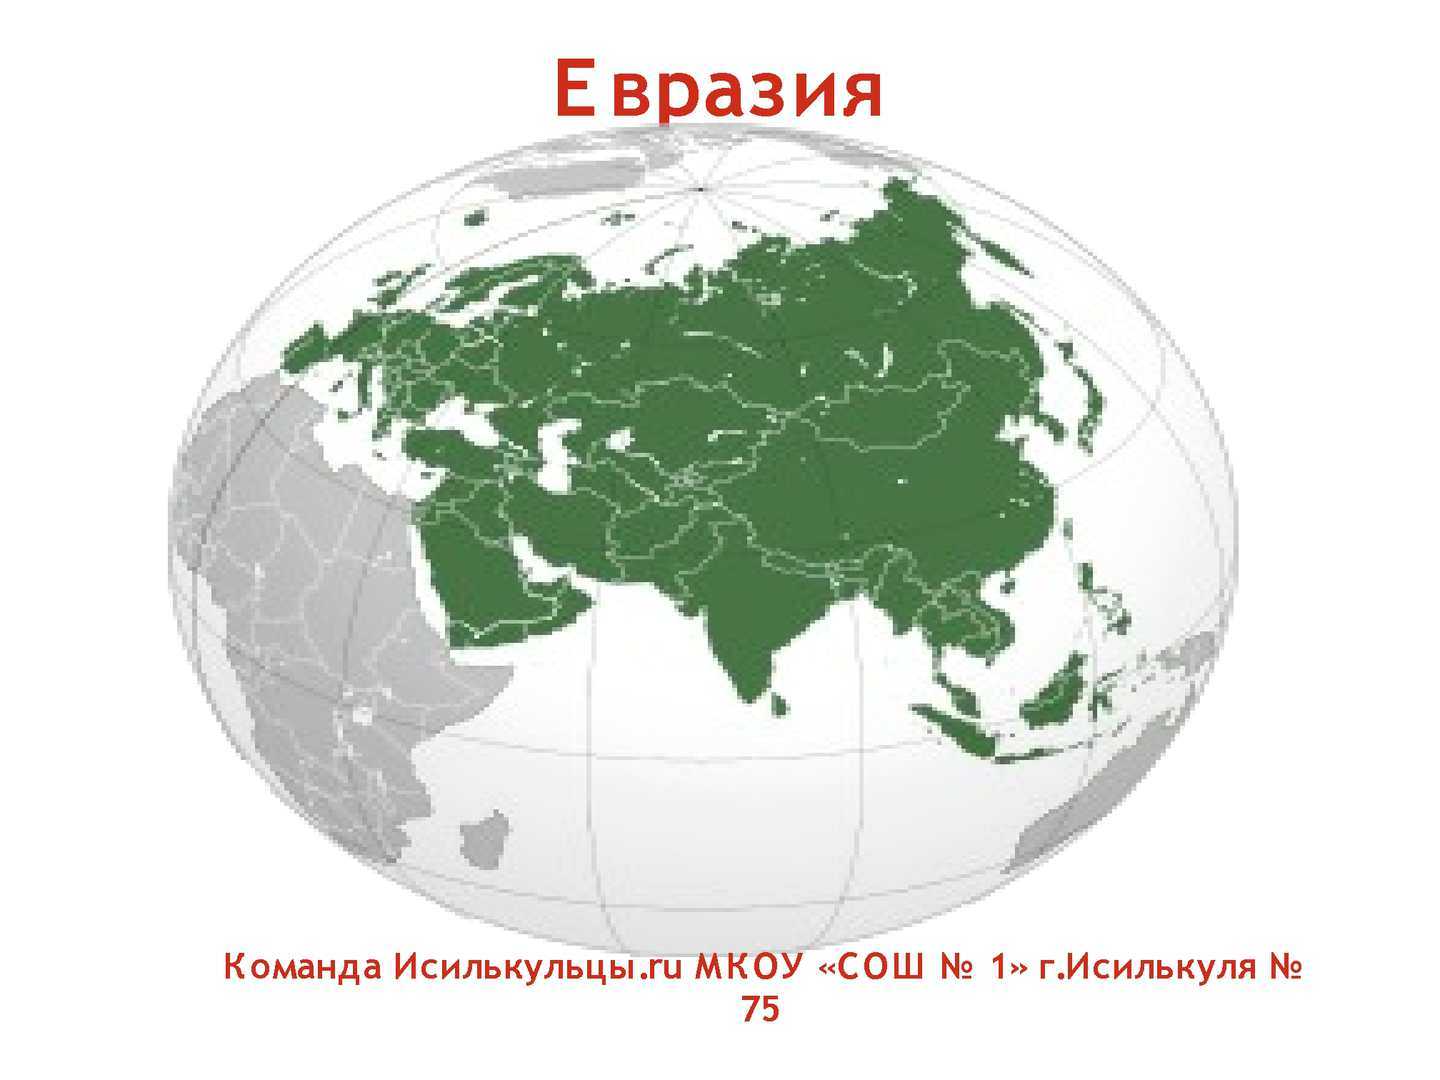 Евразия е. Материк Евразия. Континент Евразия. Материк Евразия на прозрачном фоне. Изображение Евразии.